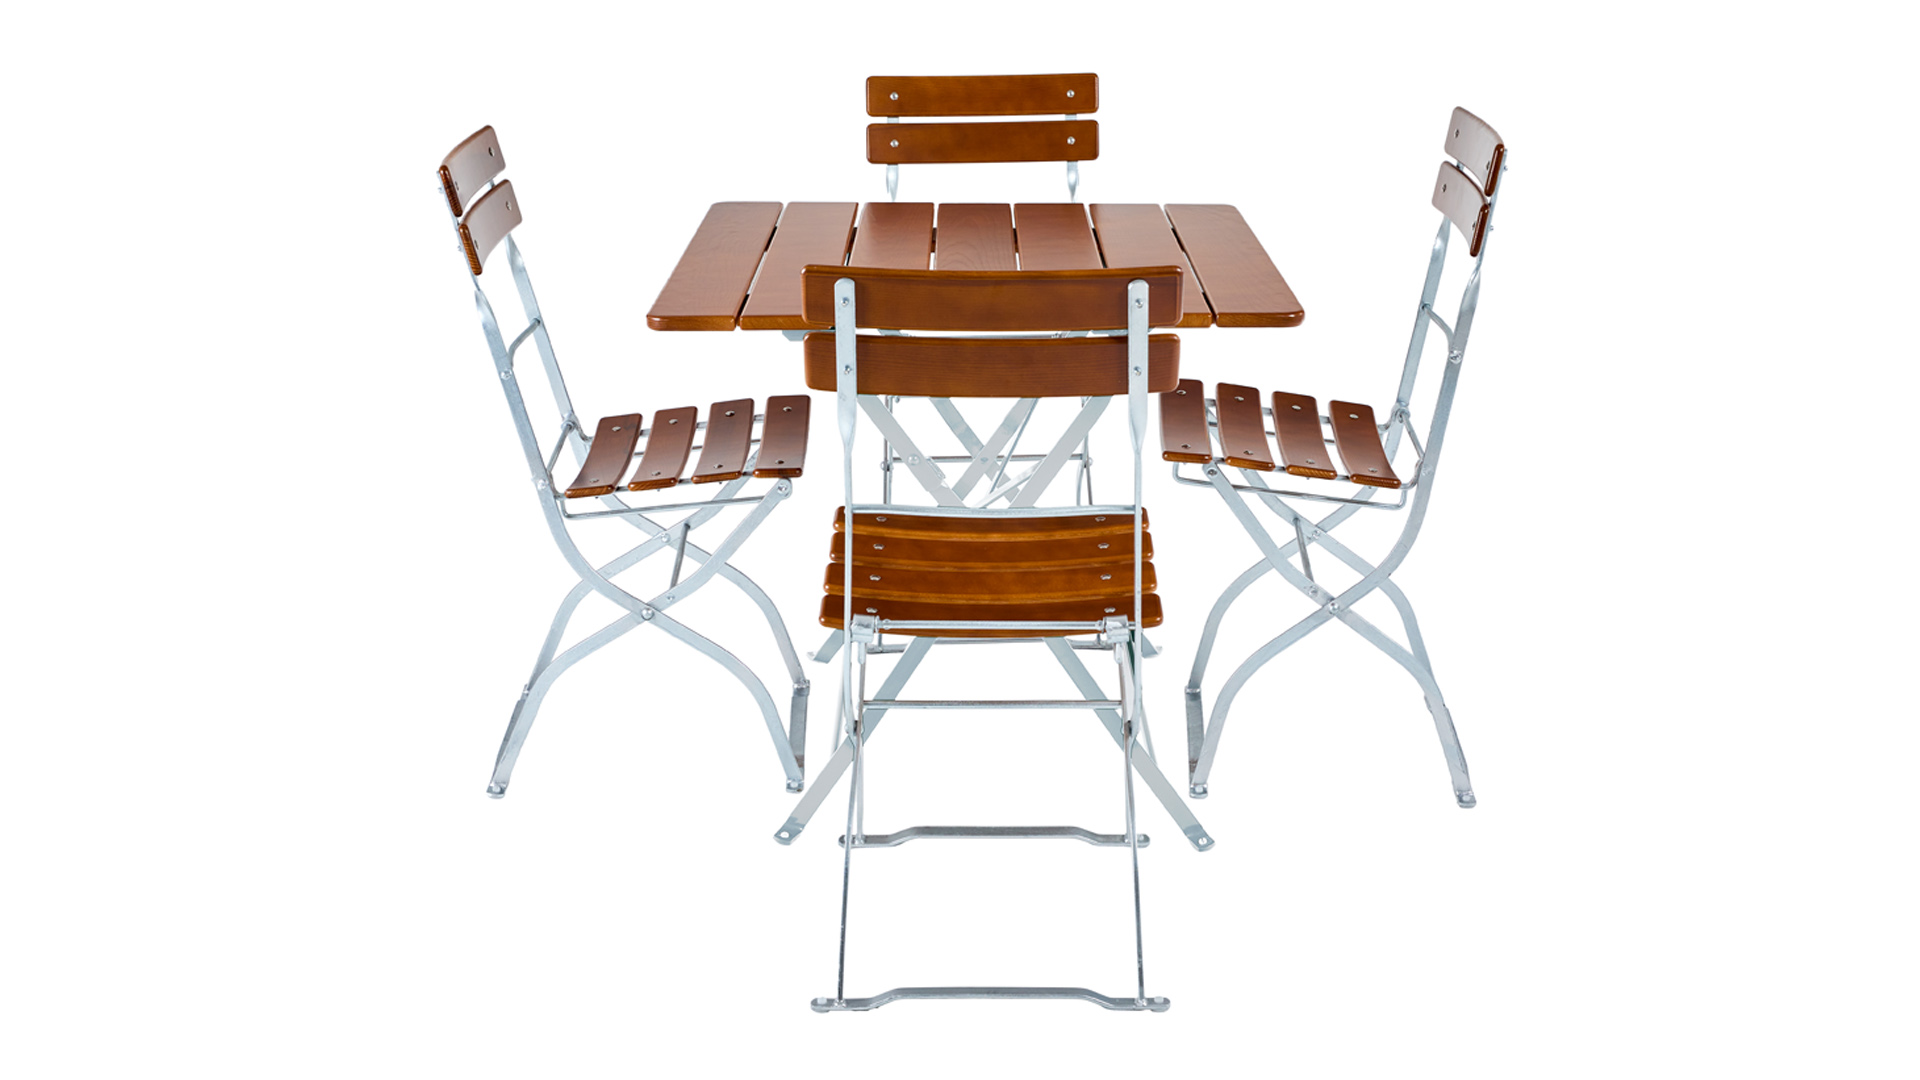 Das Biergartenmöbel-Set mit quadratischen Biergartentisch und vier Biergartenstühlen wird frontal dargestellt.